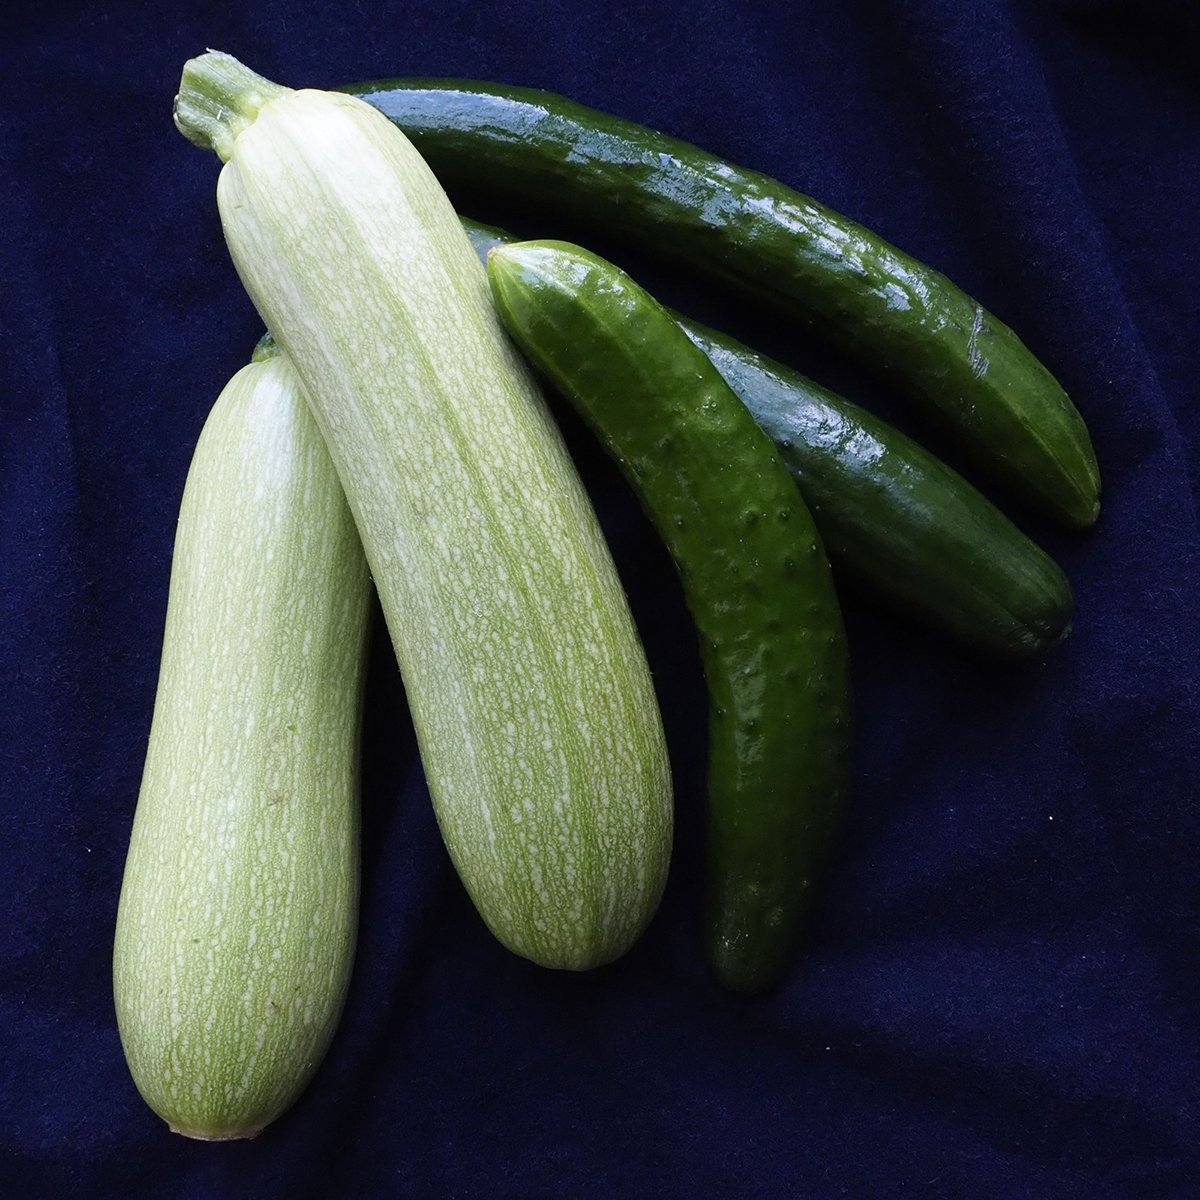 zucchini versus cucumber